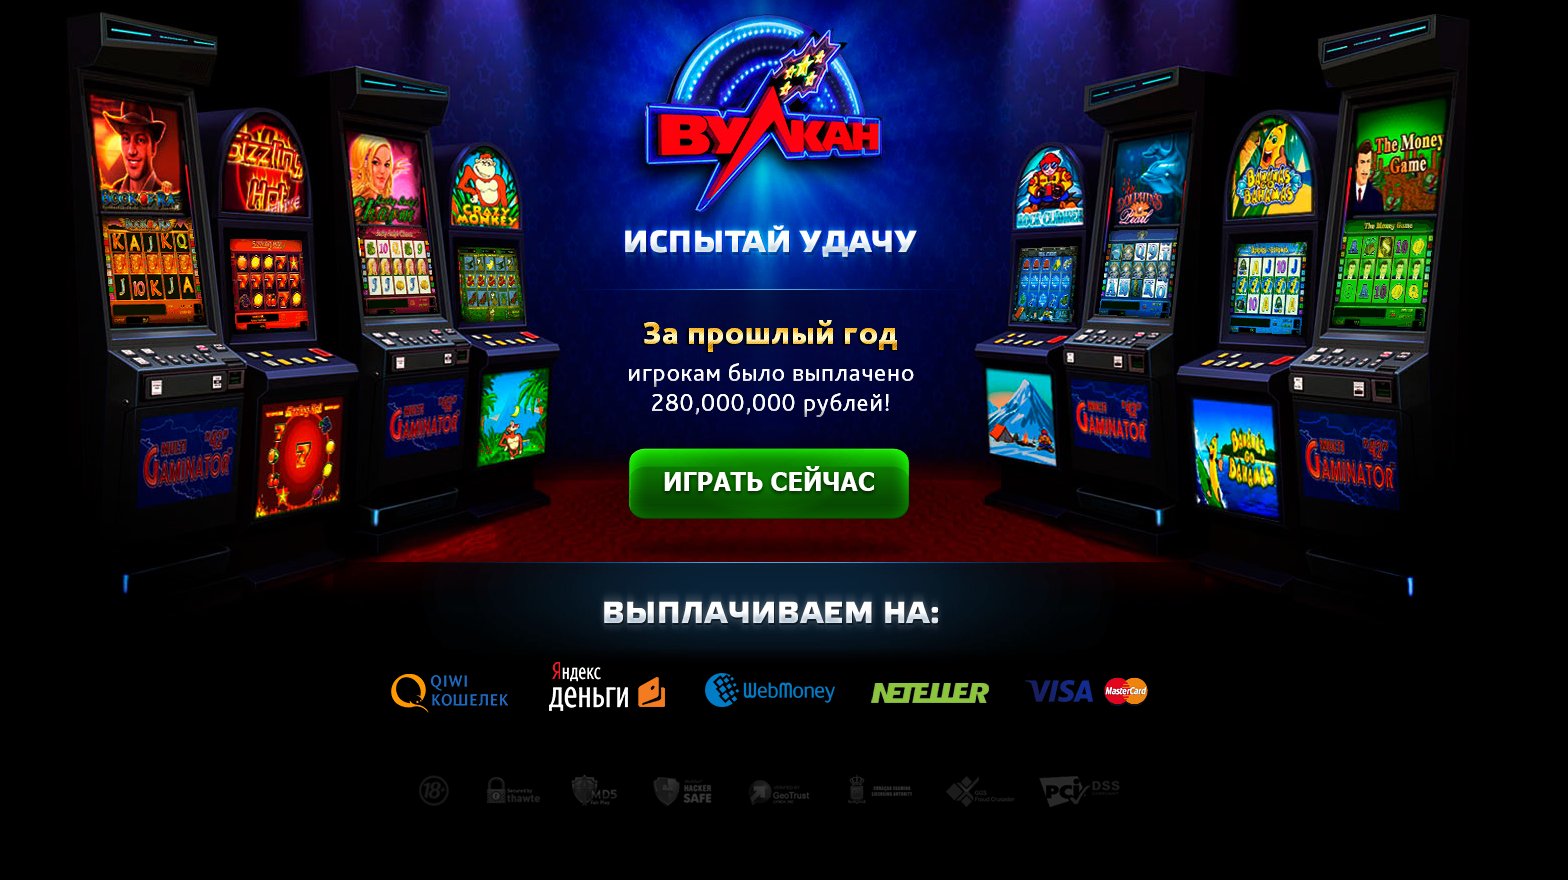 Вулкан игровые автоматы казахстан столото проверить билеты 4 из 20 по номеру